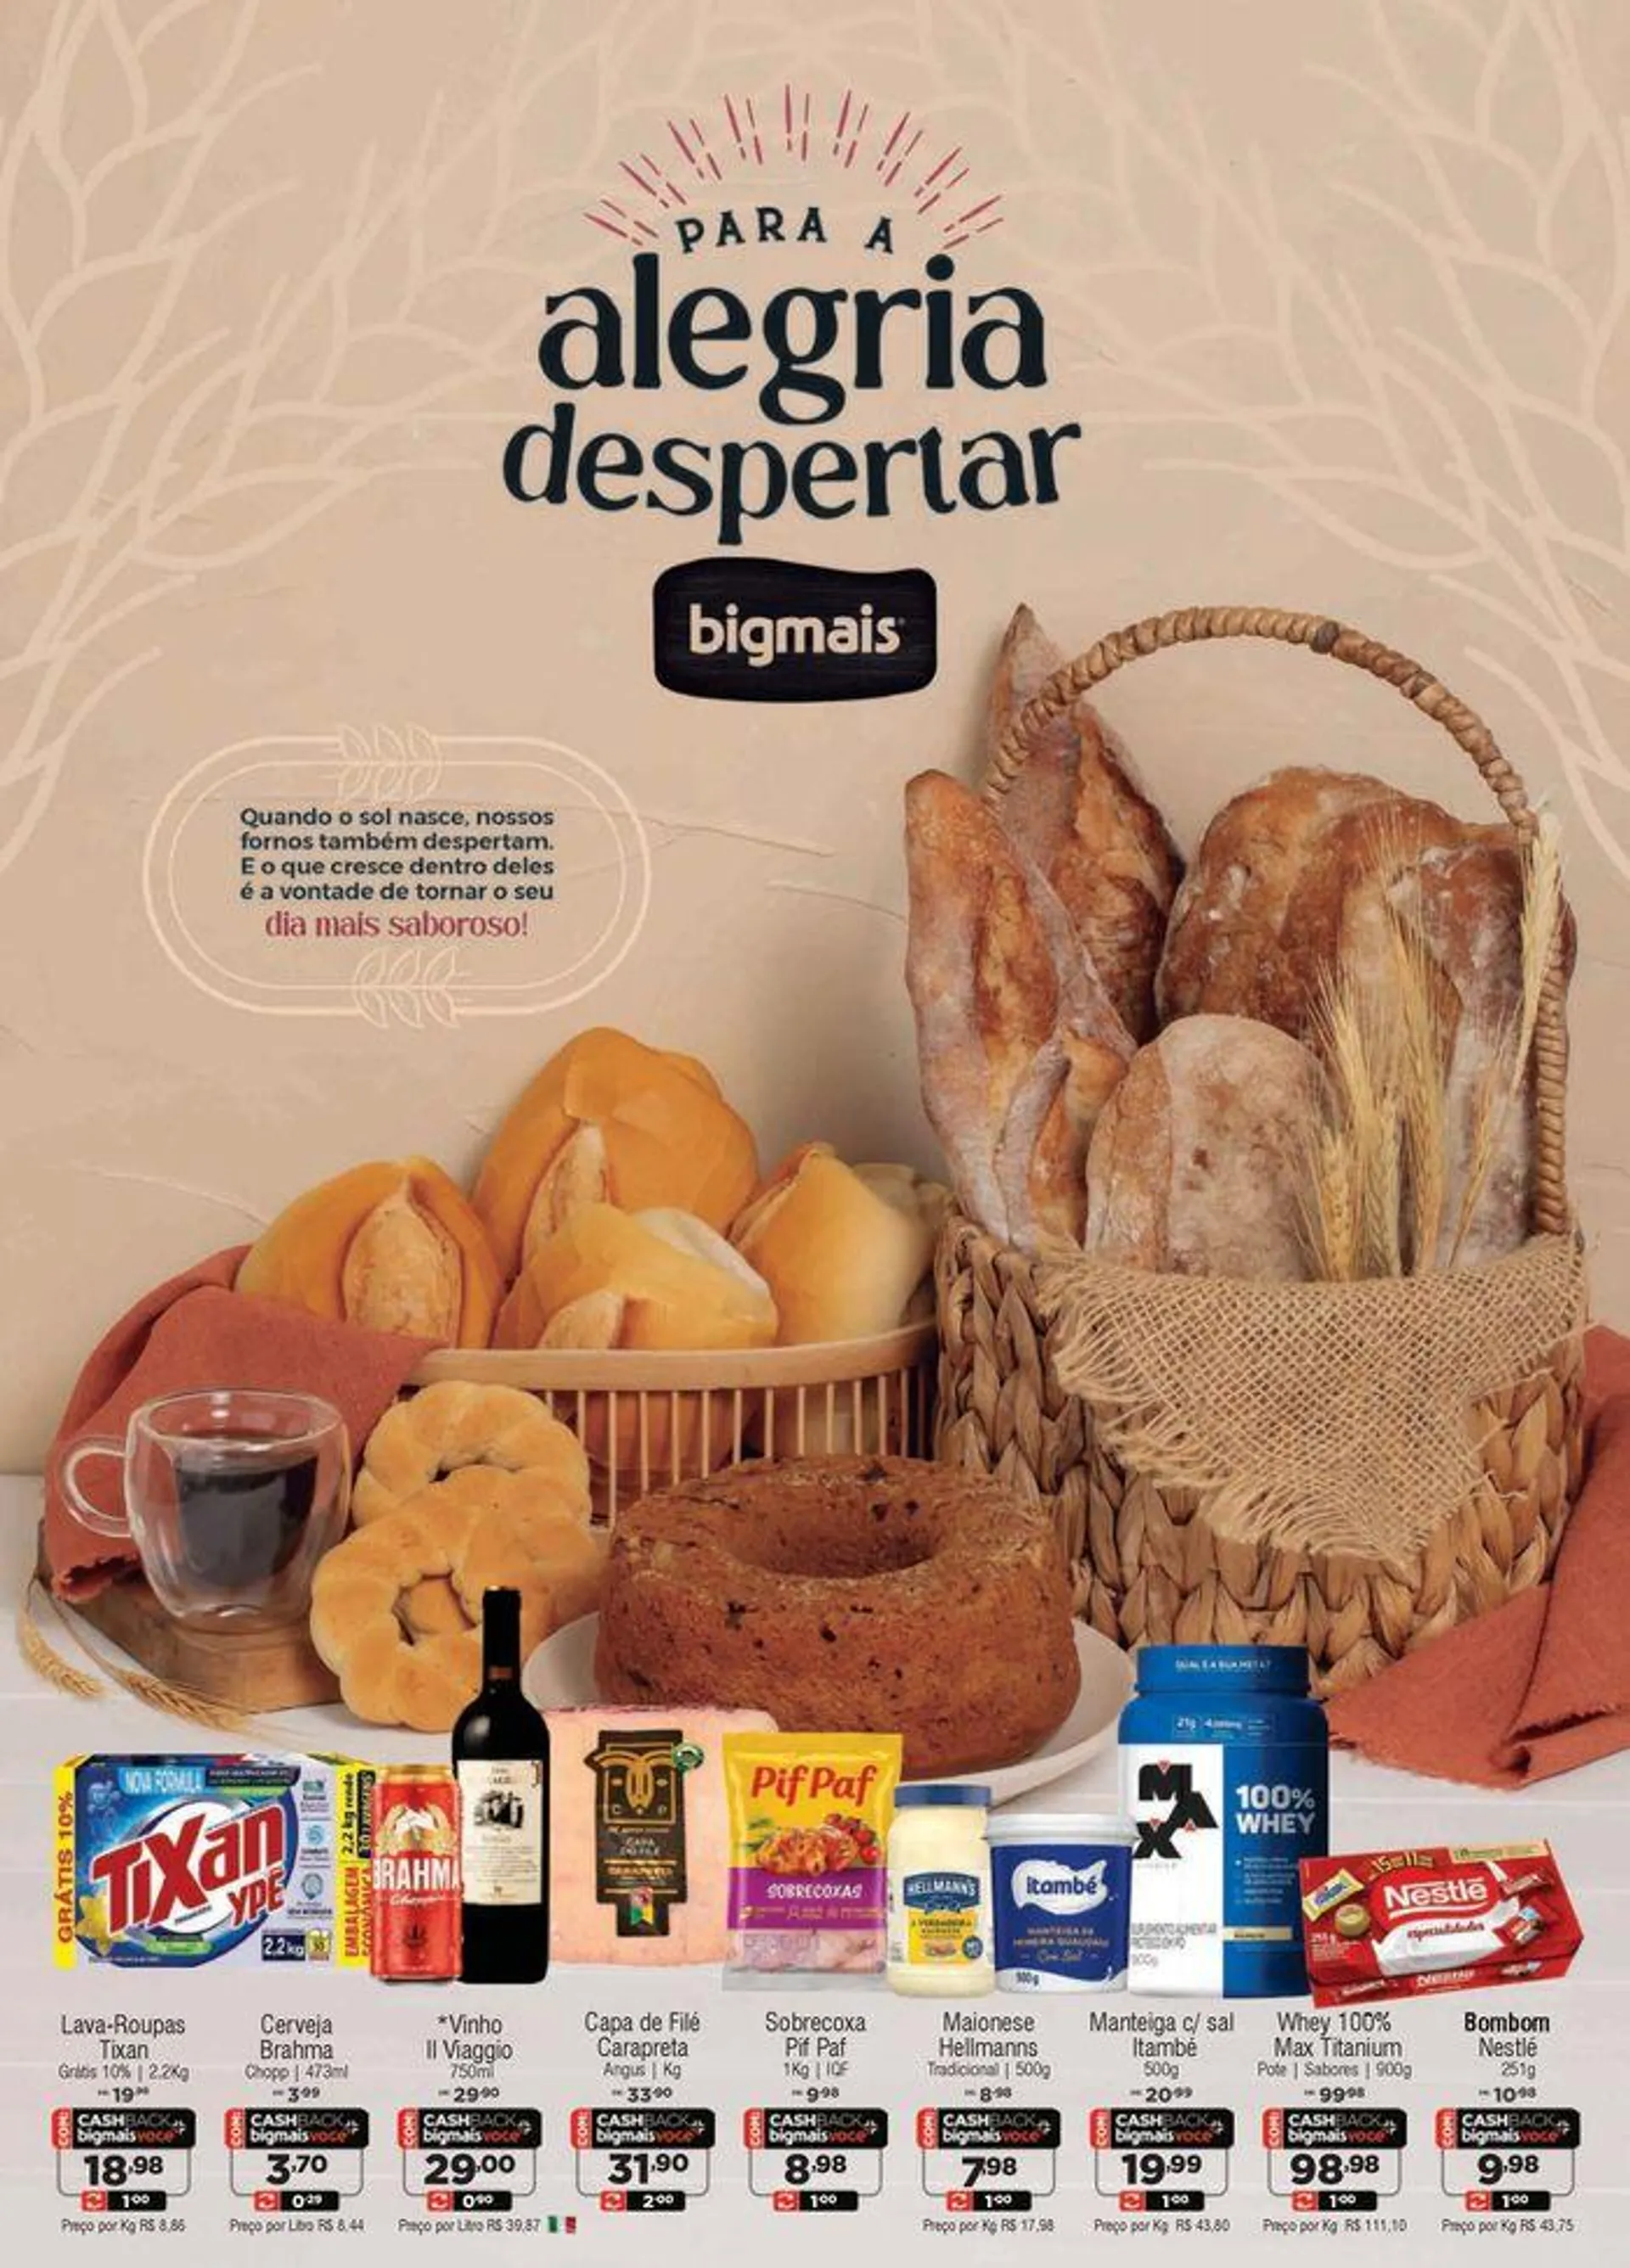 Ofertas Big Mais Supermercados - 1